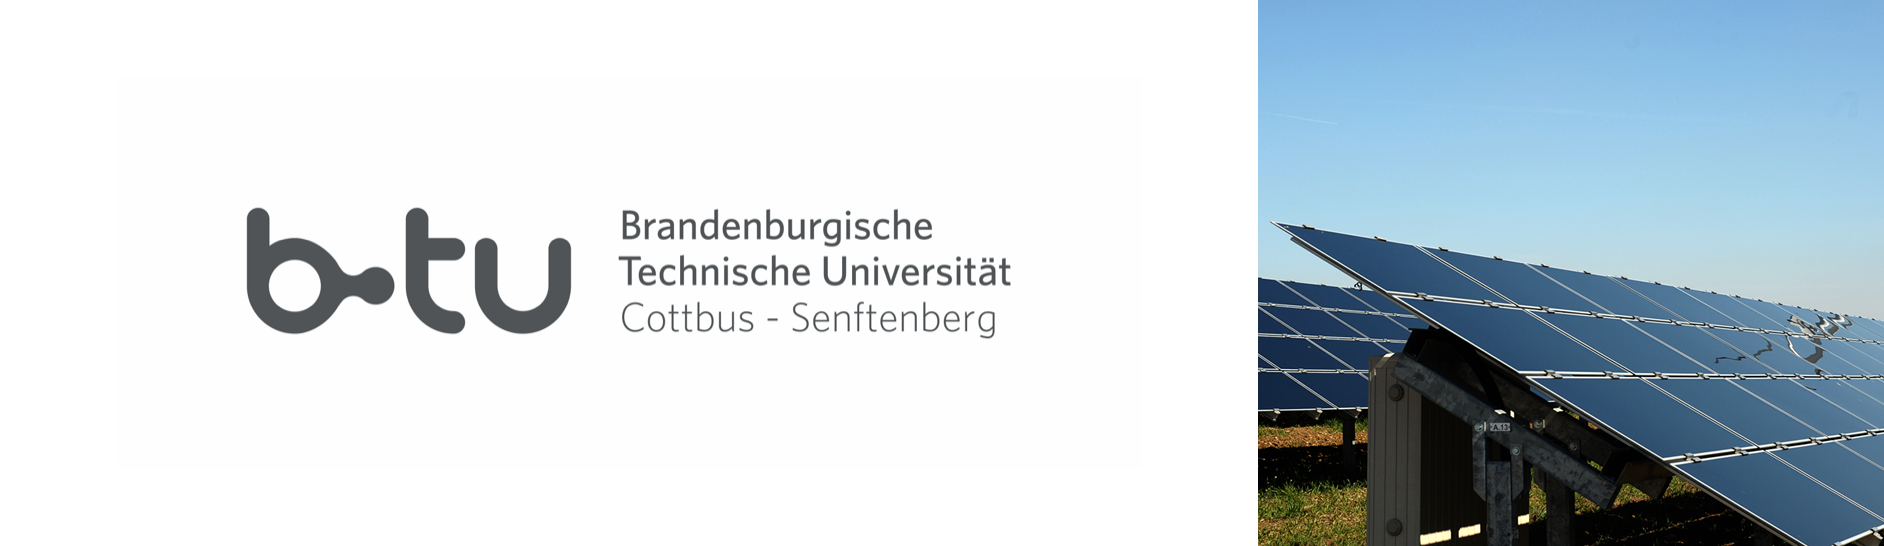 Brandenburgische Technische Universitt BTU Cottbus-Senftenberg